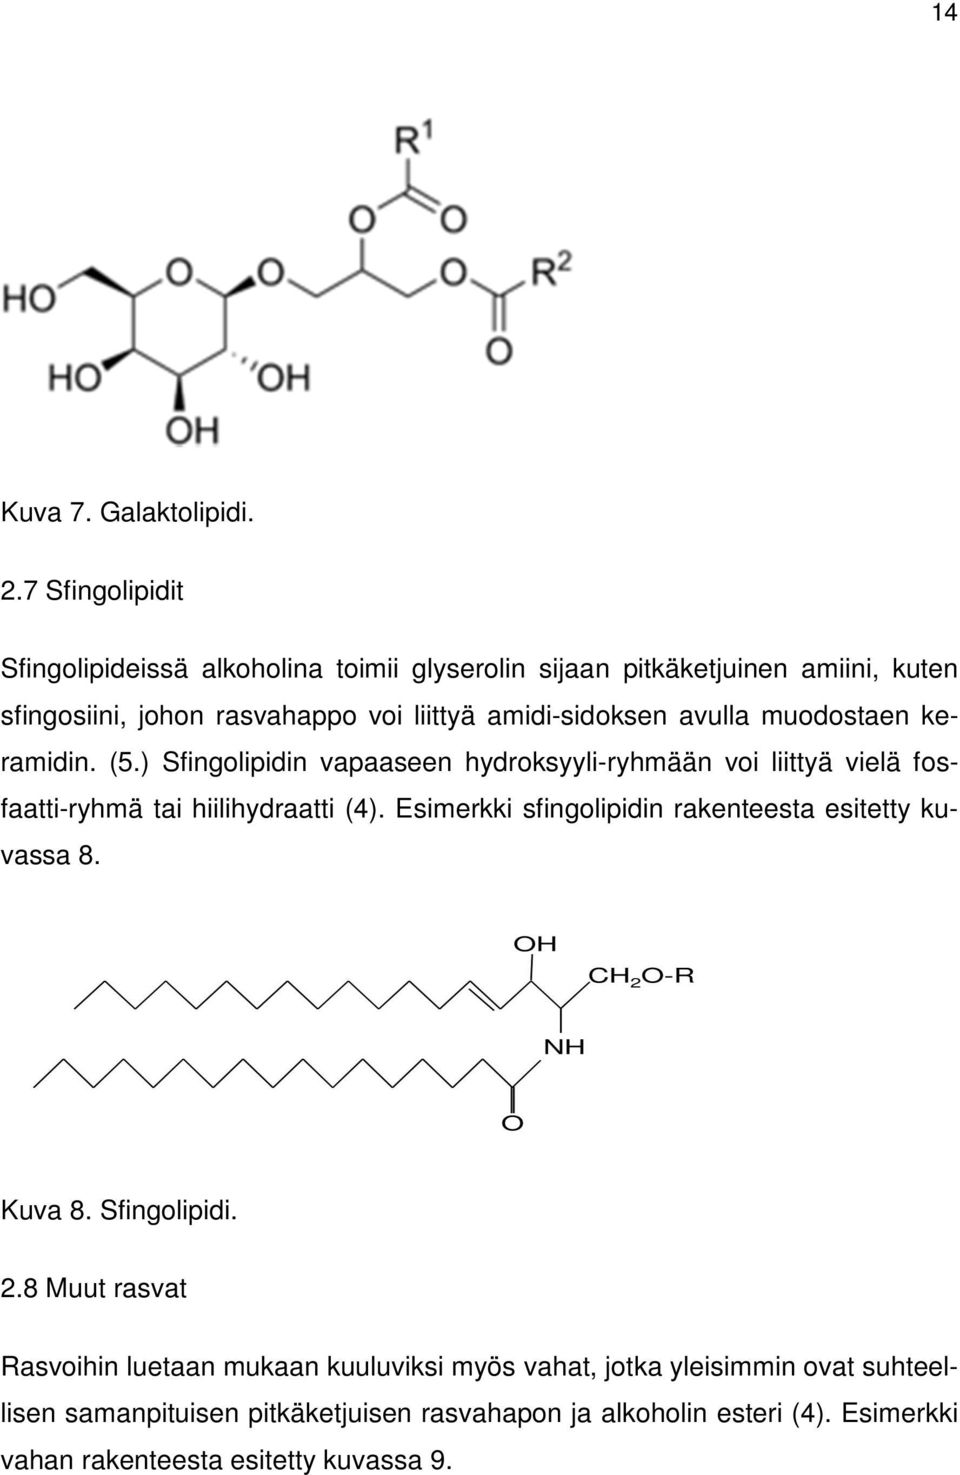 amidi-sidoksen avulla muodostaen keramidin. (5.) Sfingolipidin vapaaseen hydroksyyli-ryhmään voi liittyä vielä fosfaatti-ryhmä tai hiilihydraatti (4).